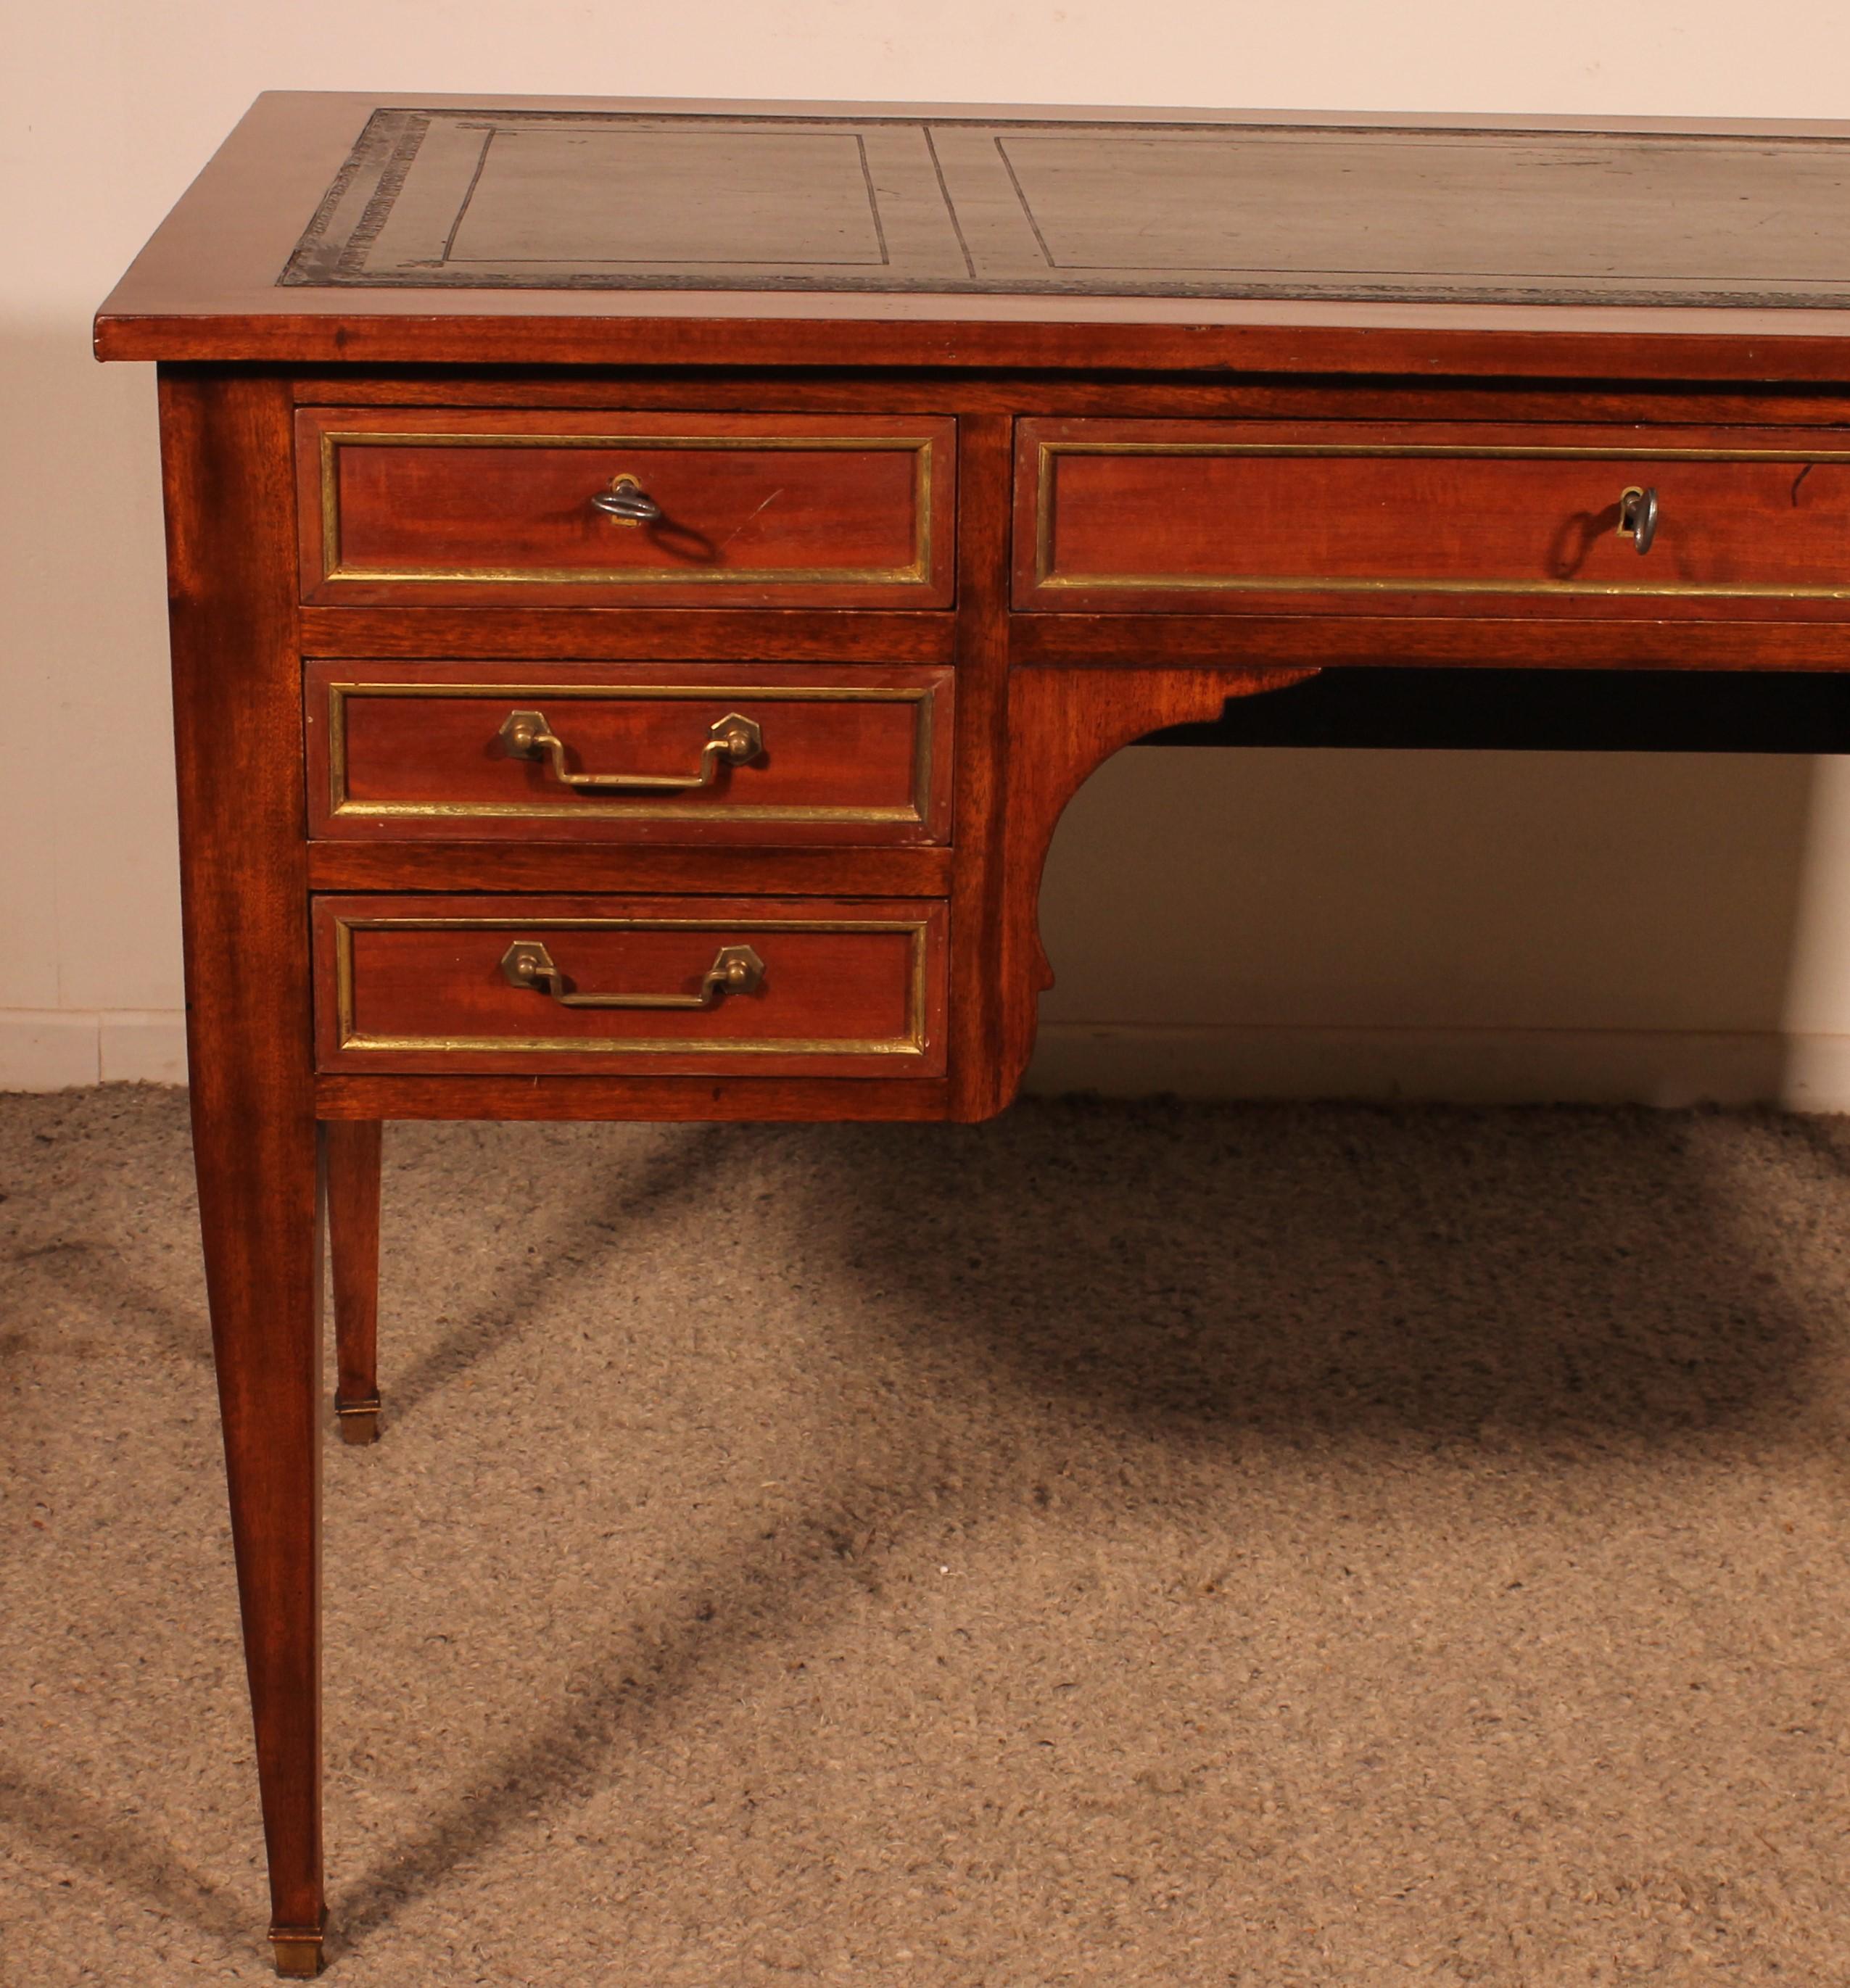 Eleganter Schreibtisch aus dem Anfang des 20. Jahrhunderts im Stil Louis XVI aus Mahagoni.
Er hat 7 Schubladen auf der Vorderseite und ist an seinen 4 Seiten mit vergoldeten Messingstäben verziert. Auch die Schubladen sind mit vergoldeten